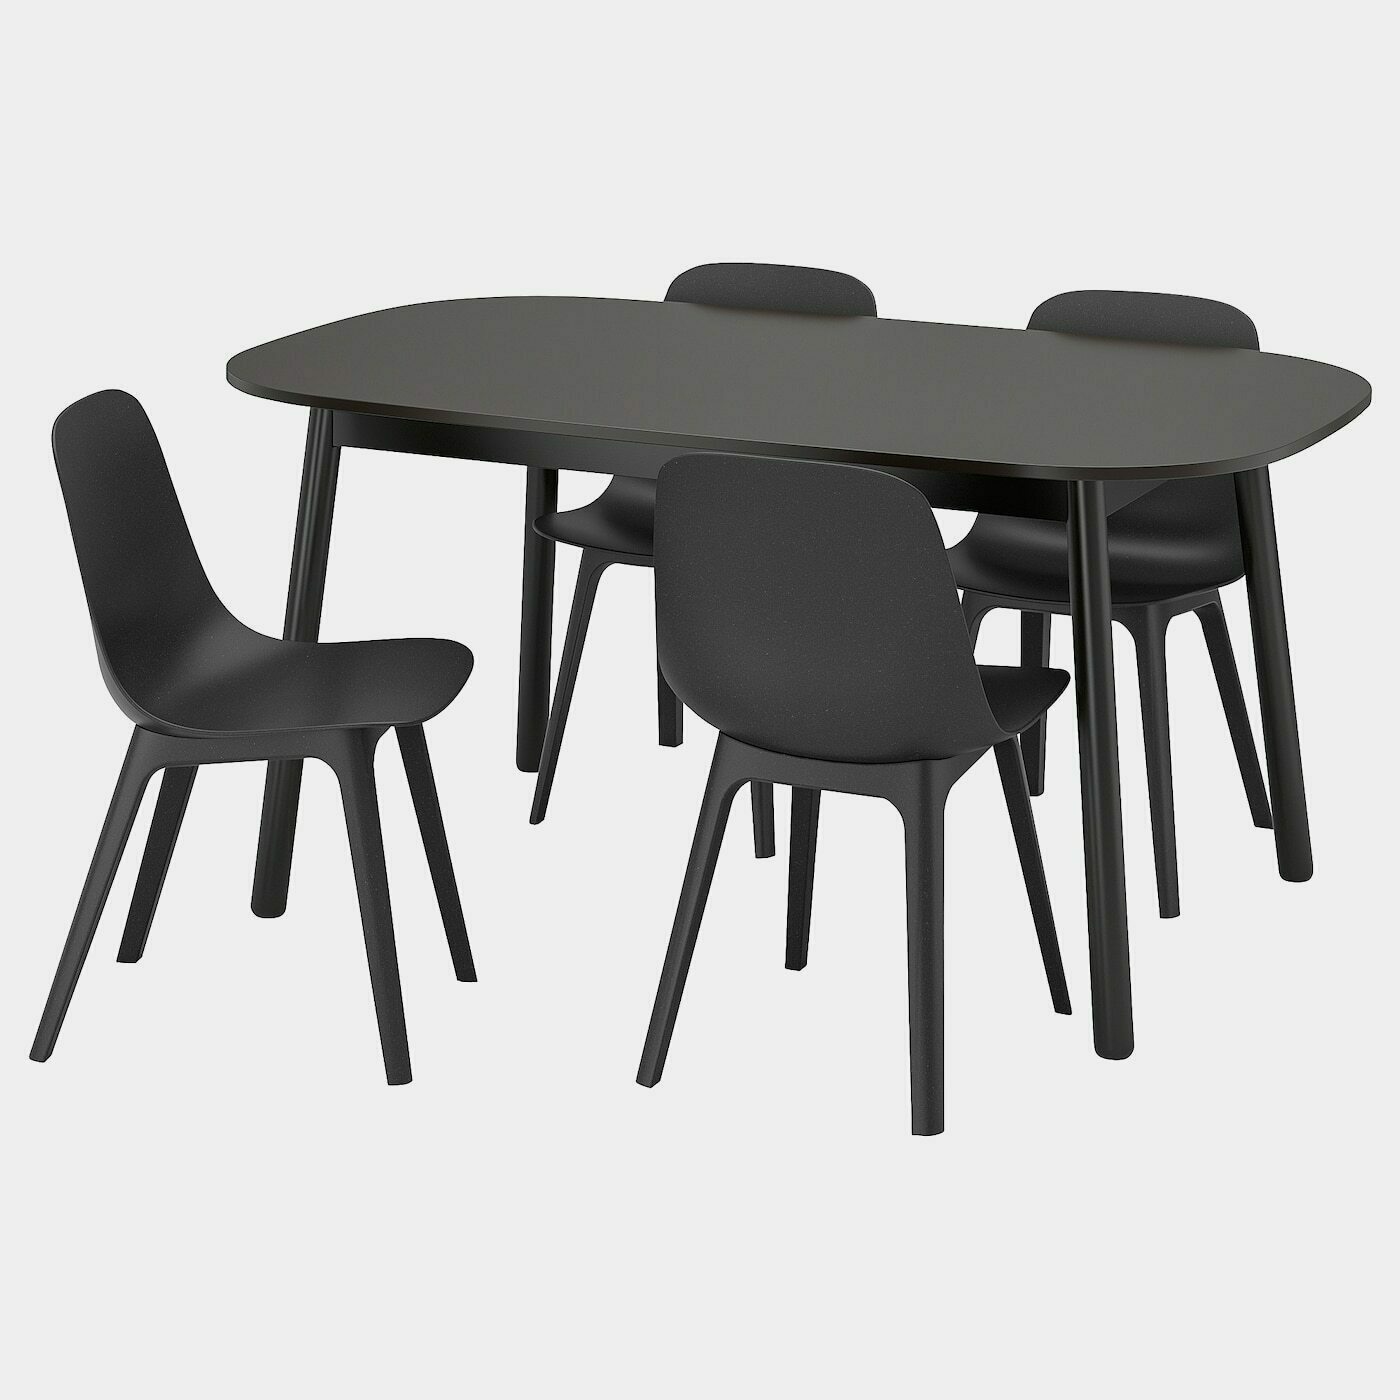 VEDBO / ODGER Tisch und 4 Stühle  -  - Möbel Ideen für dein Zuhause von Home Trends. Möbel Trends von Social Media Influencer für dein Skandi Zuhause.